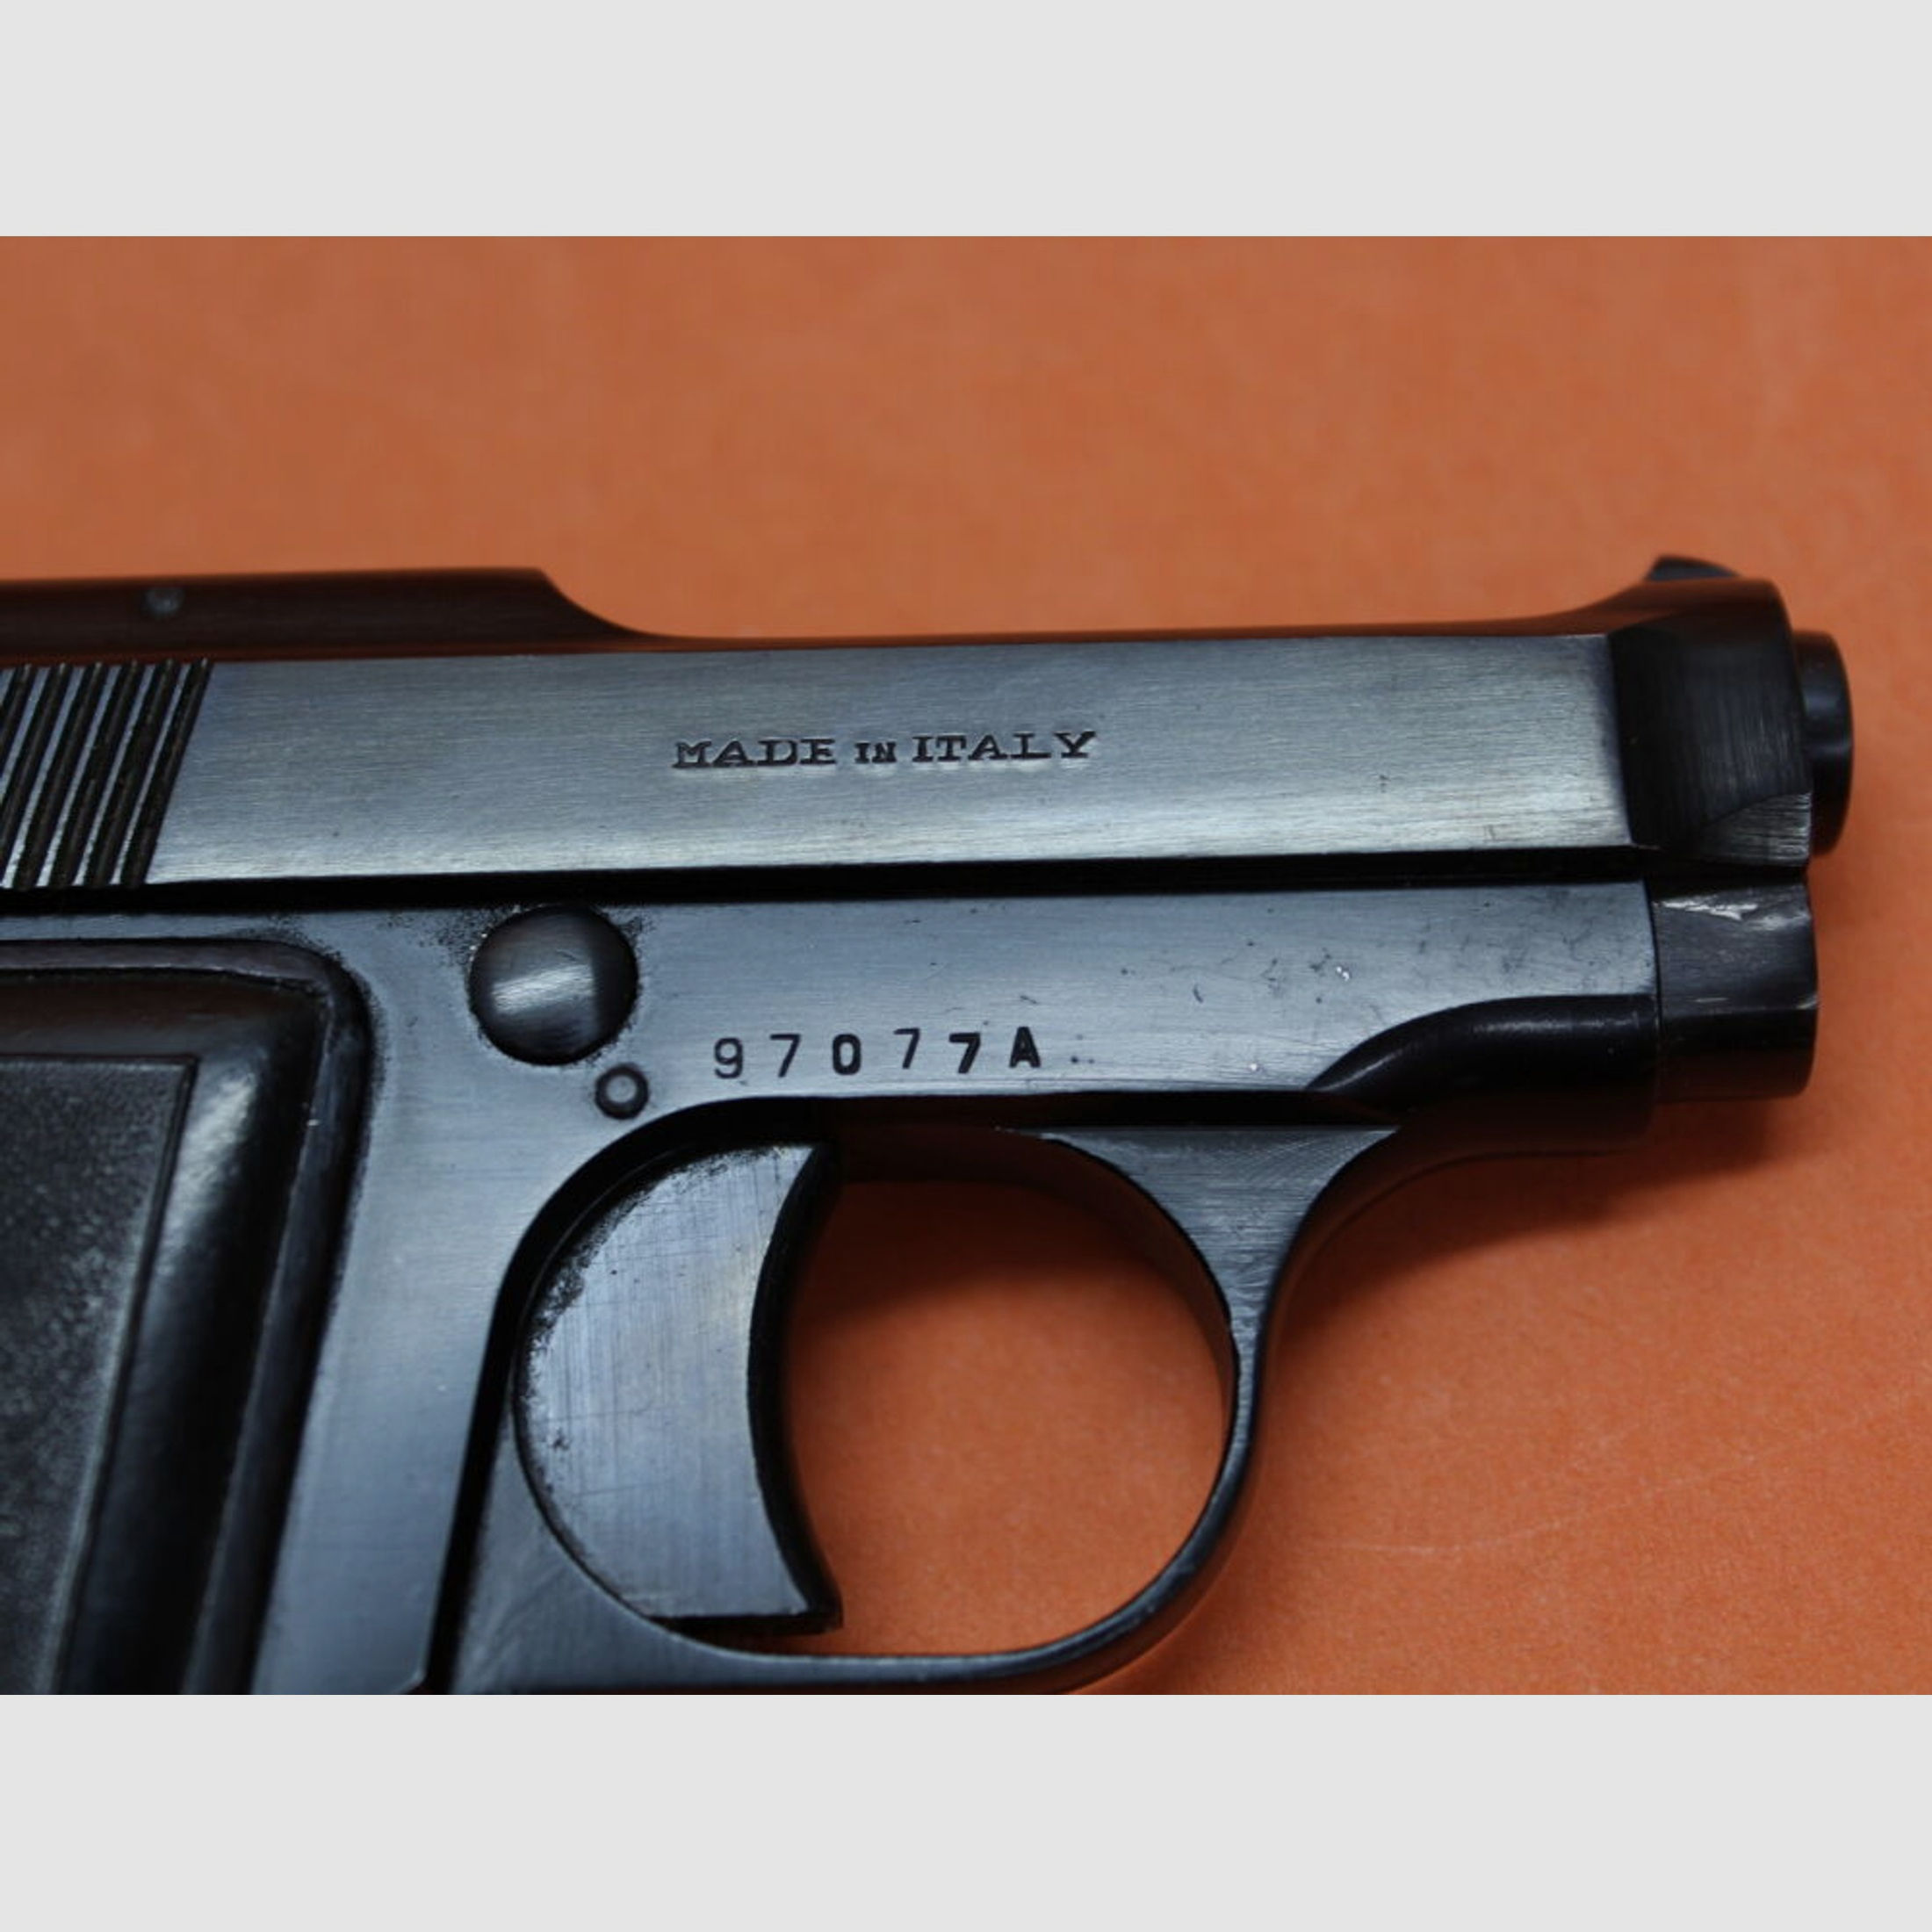 Beretta	 Ha.Pistole 6,35mmBrowning Beretta 418 "Bantam" wie James Bond Agent 007 bei Ian Flemings Romanen